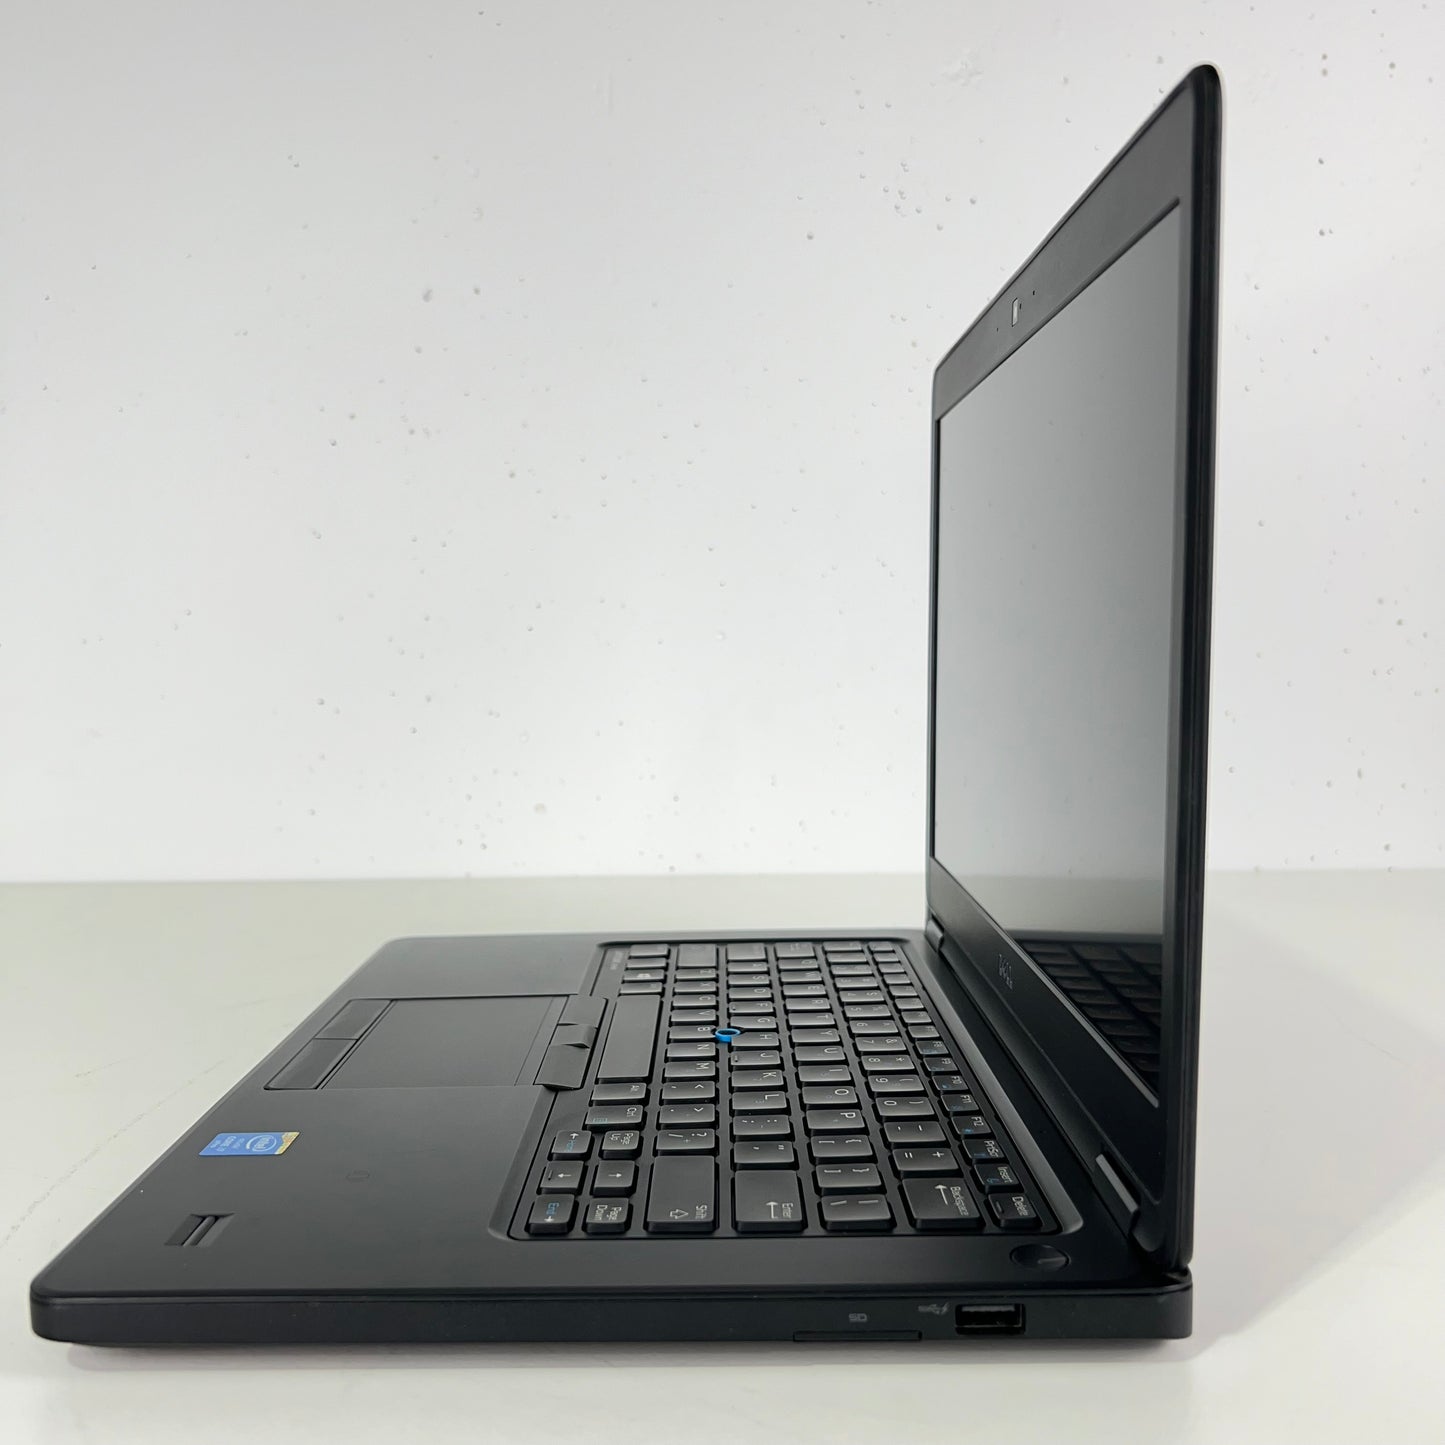 Dell Laptop Latitude E5450